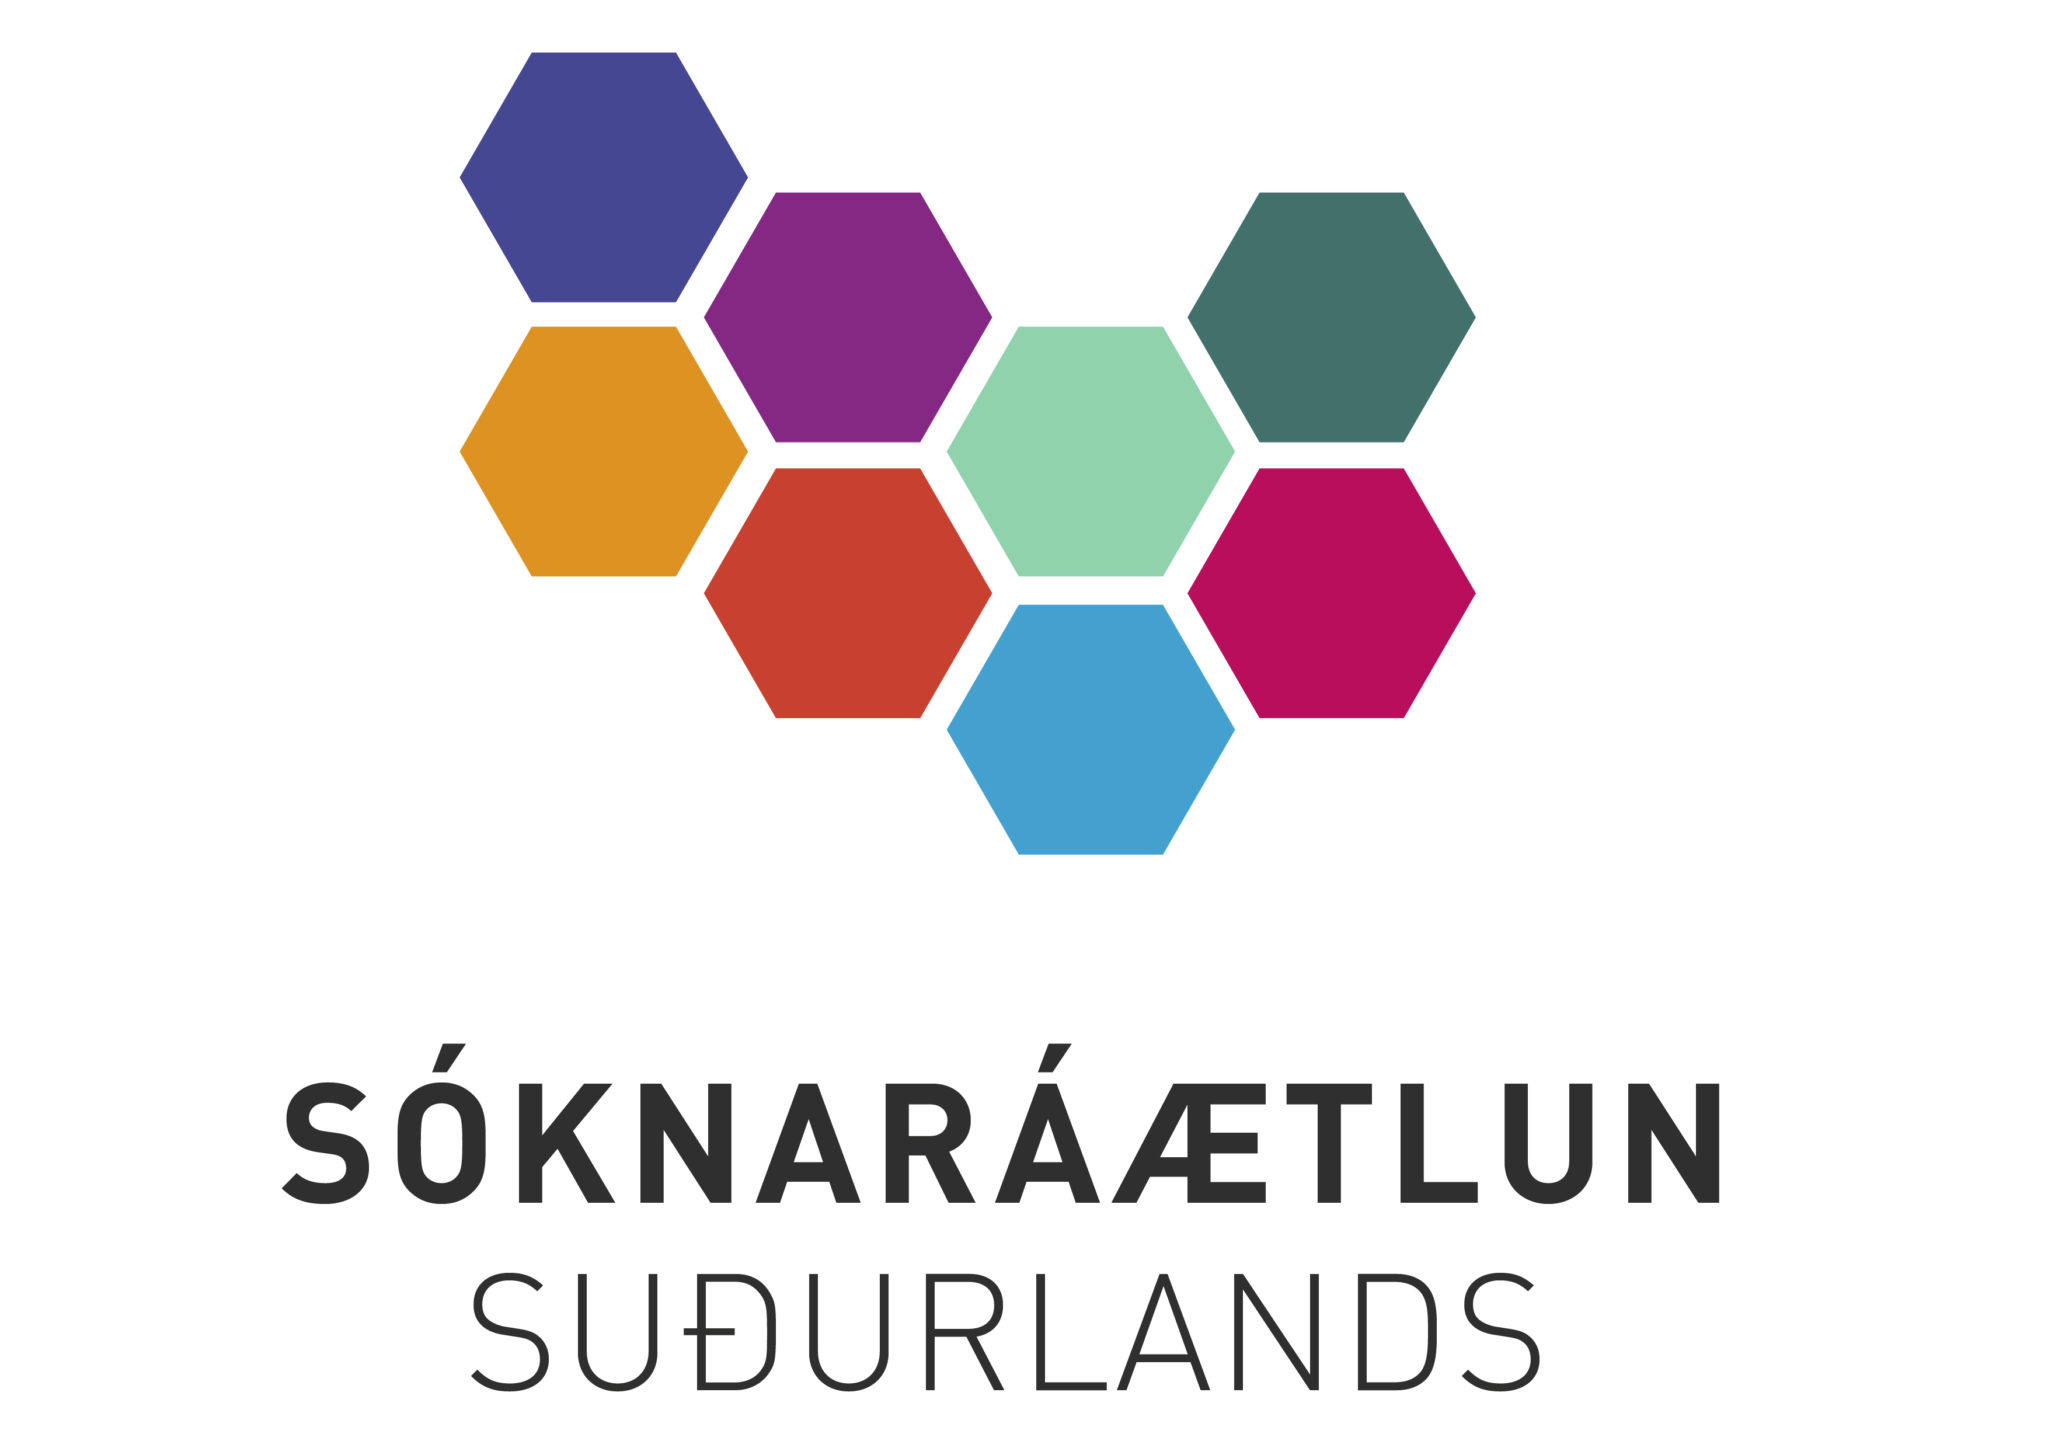 Umsóknir í Uppbyggingarsjóð Suðurlands haust 2021